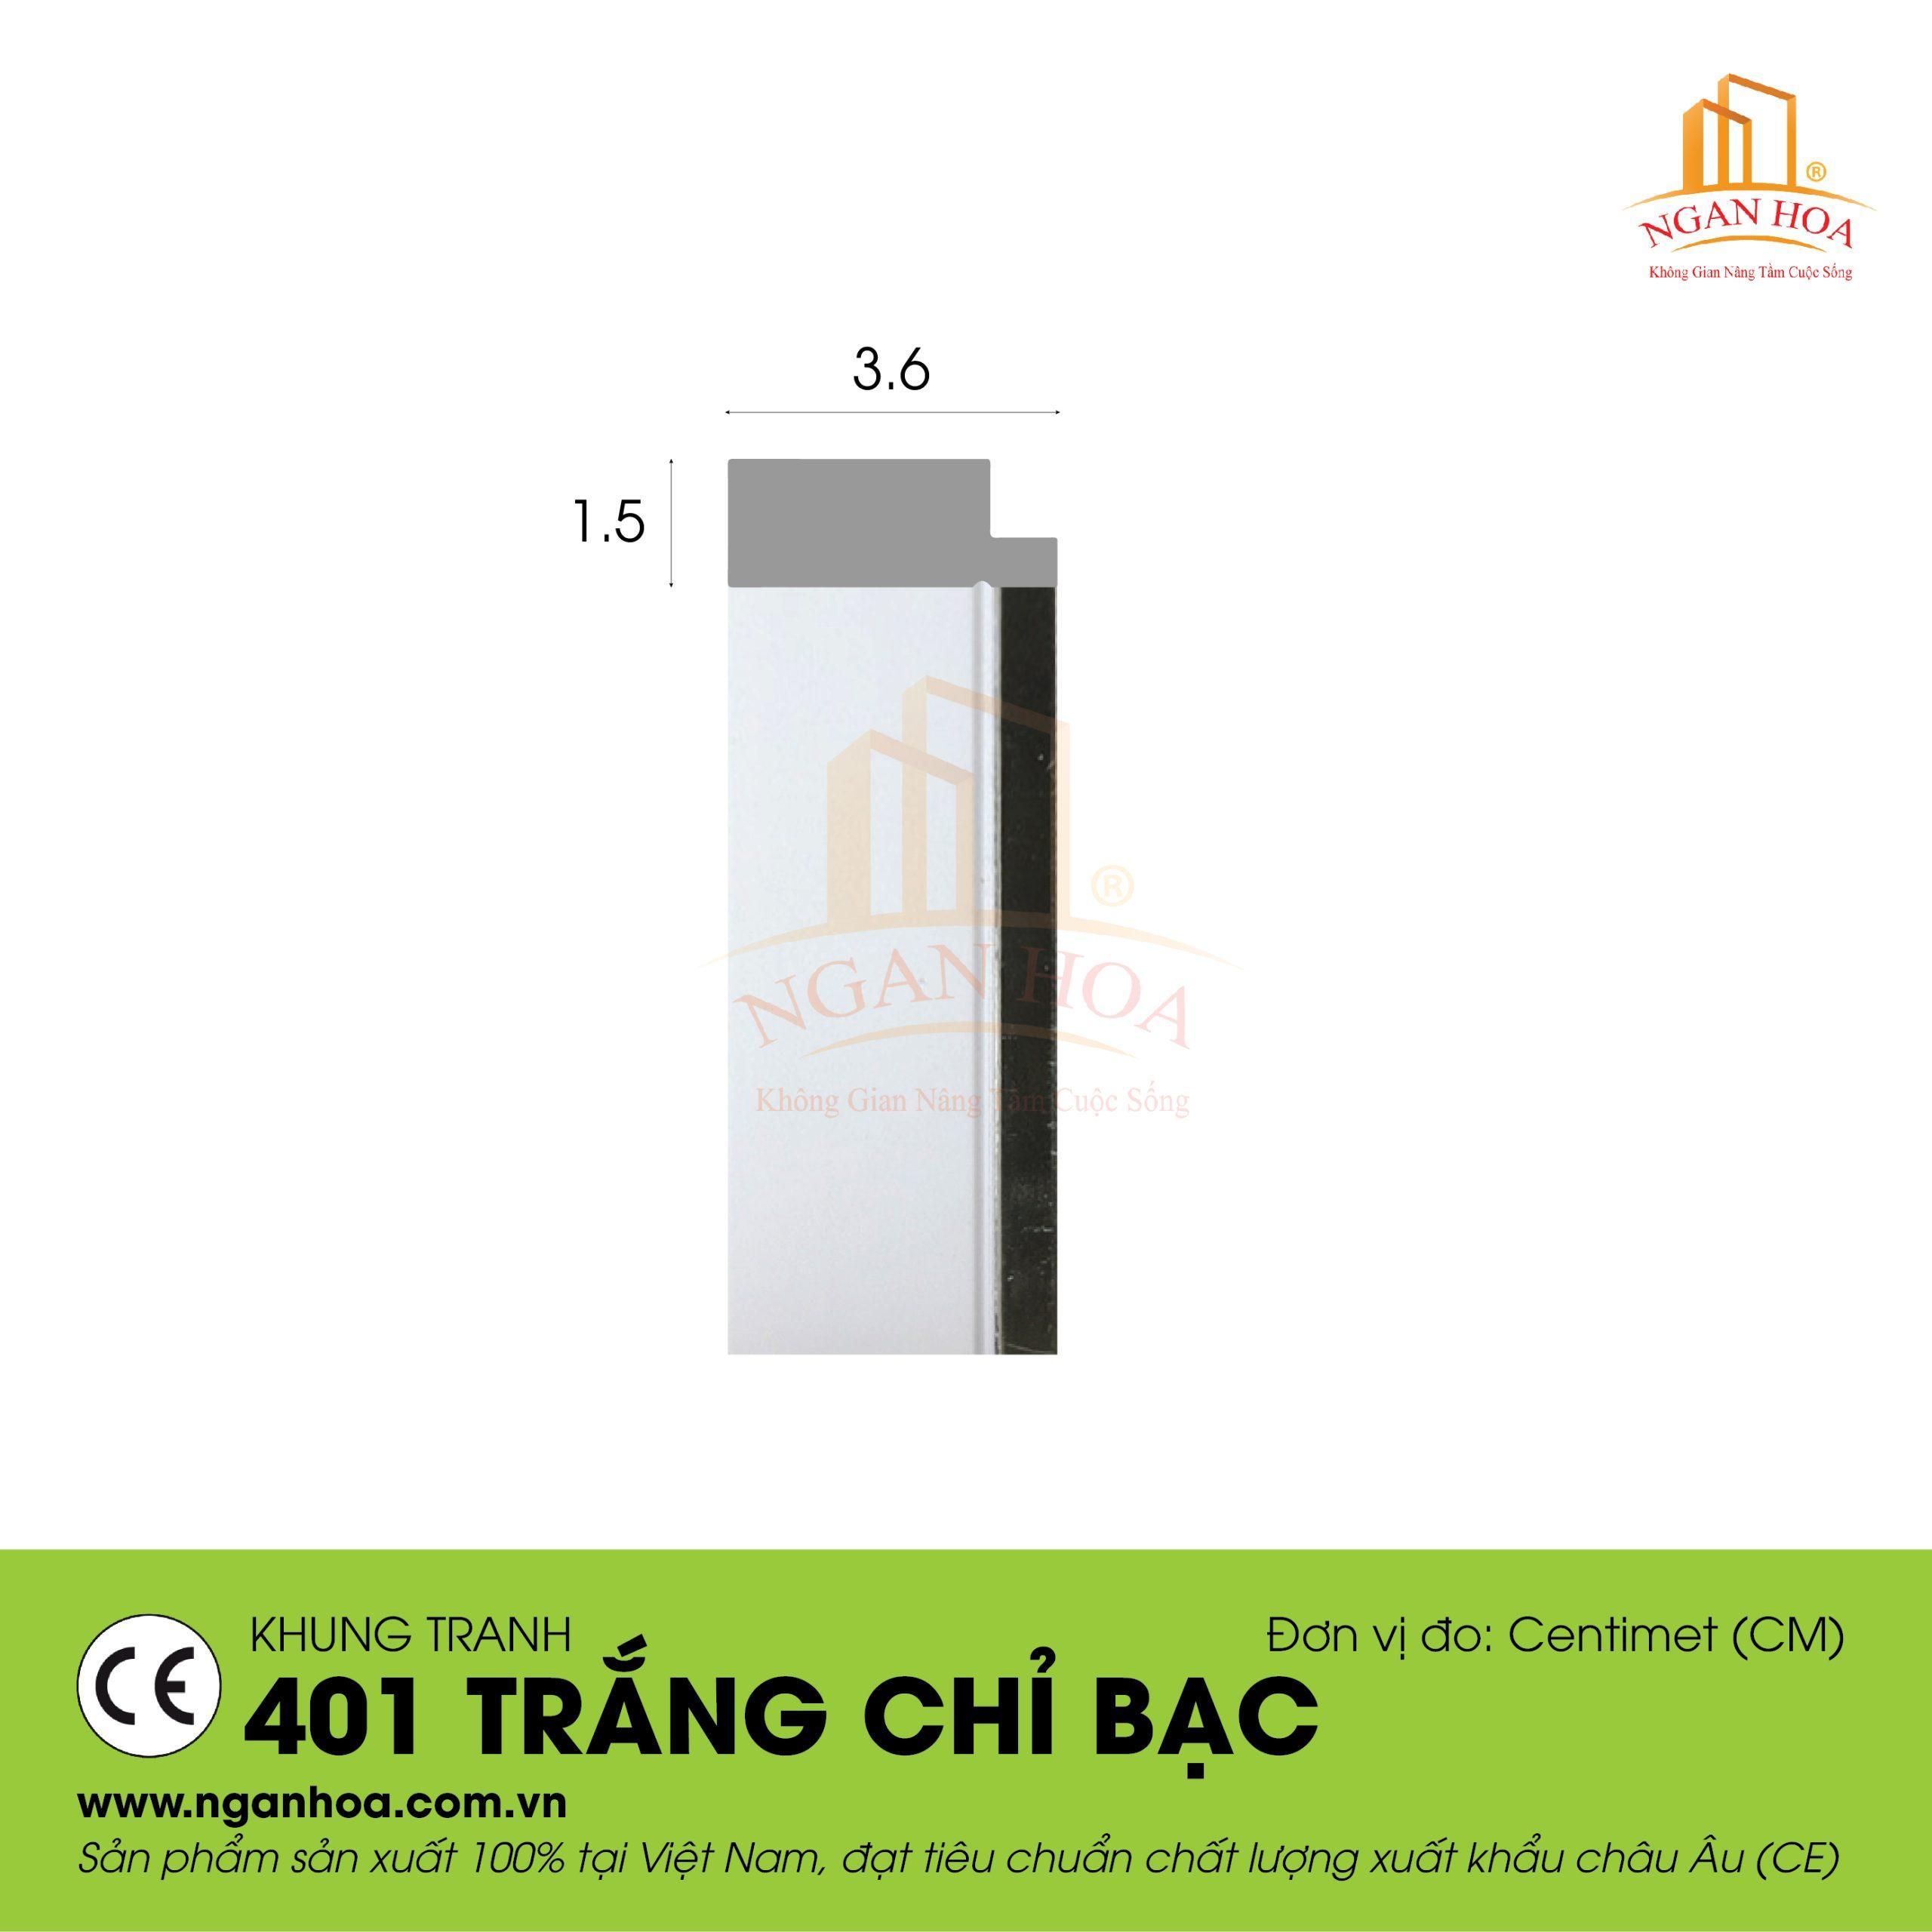 KT 401 Trang chi bac scaled